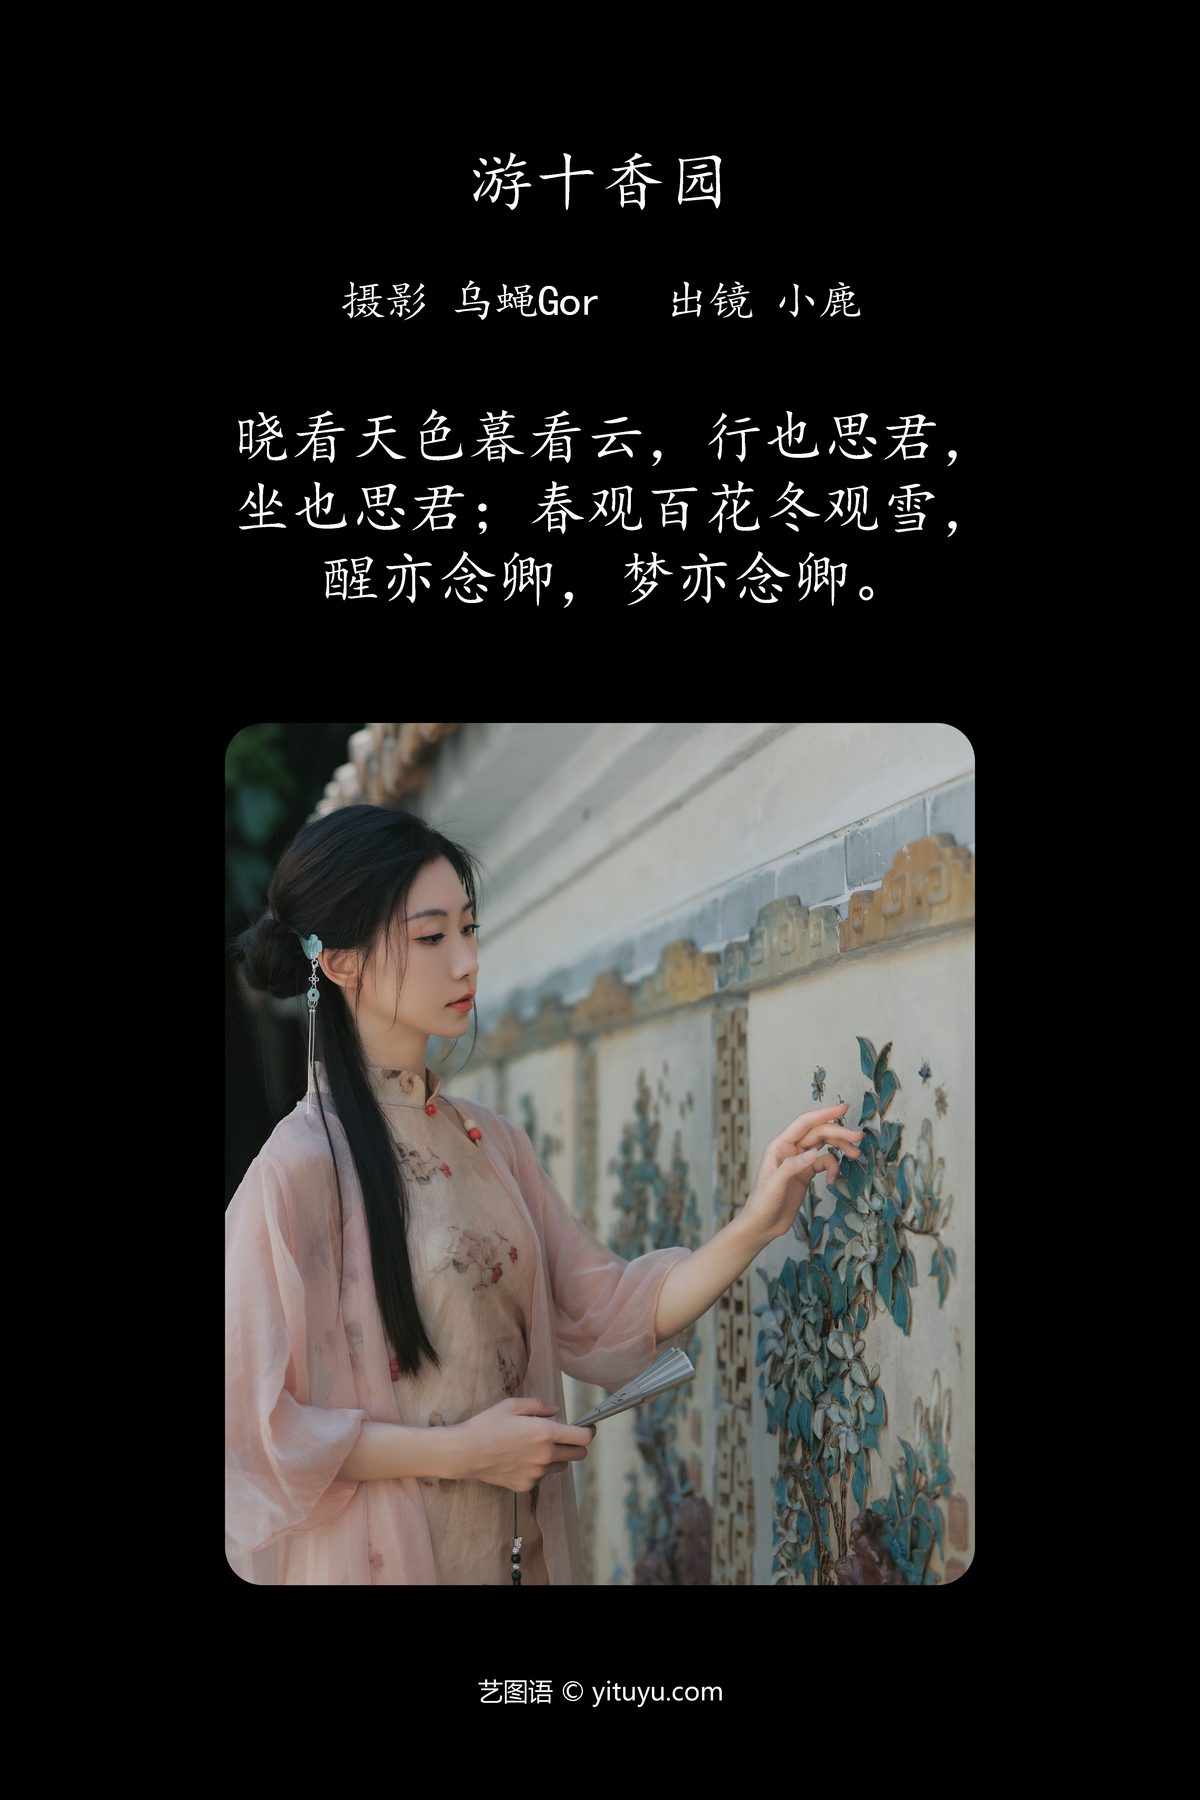 YiTuYu艺图语 Vol 4740 Xiao Lu 0002 7026456503.jpg